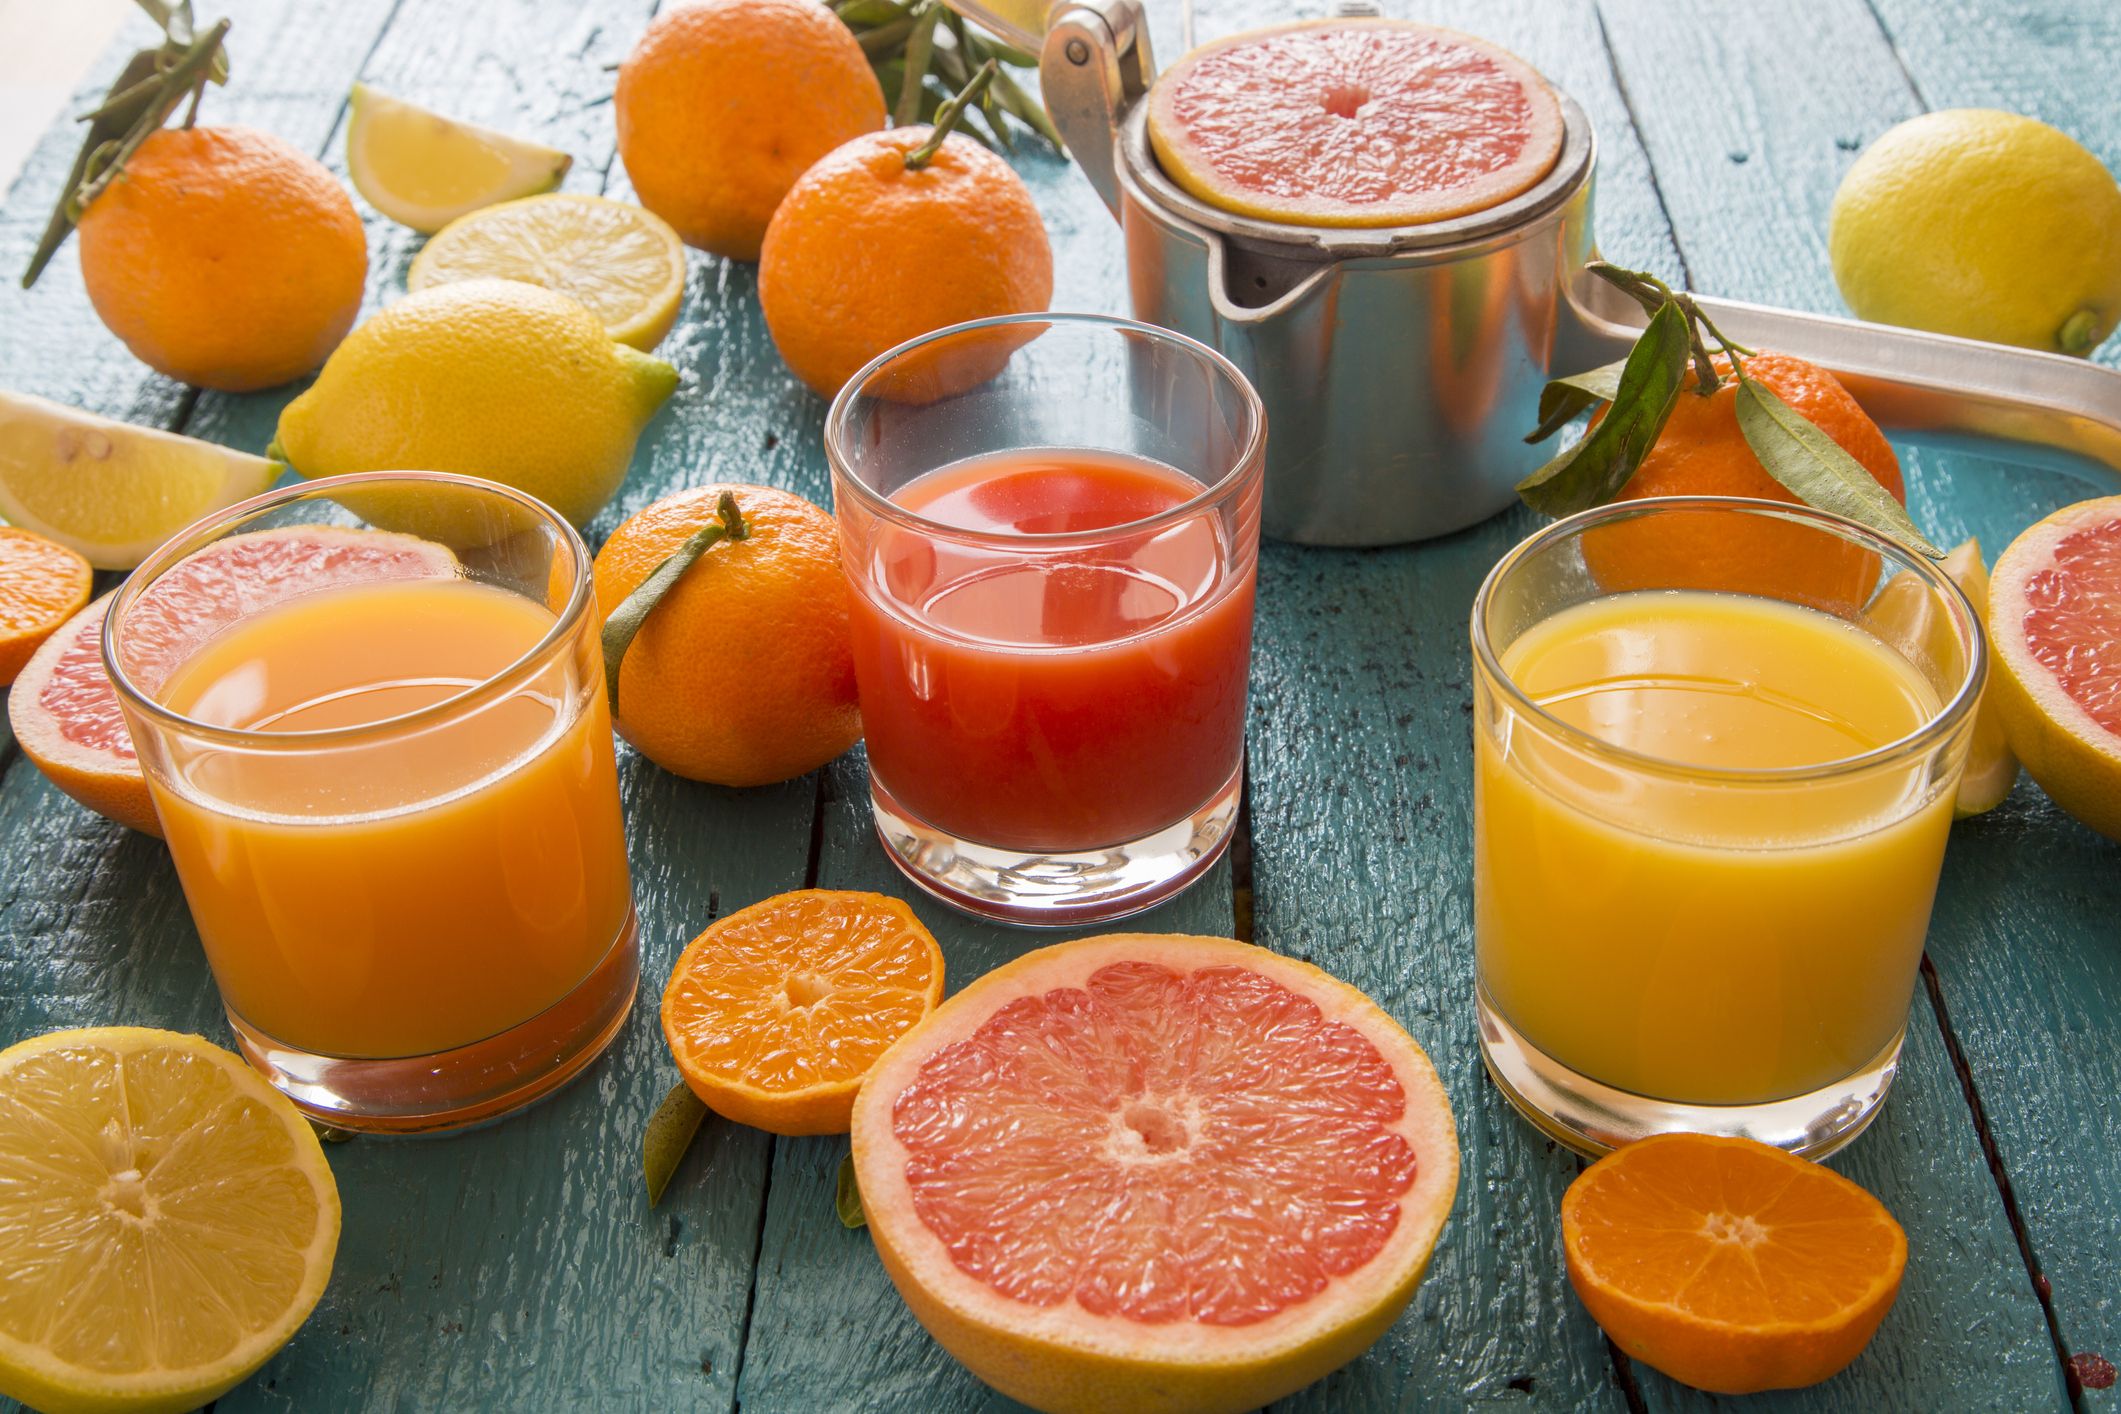 Spremuta d'arancia una volta al giorno: cosa succede davvero al